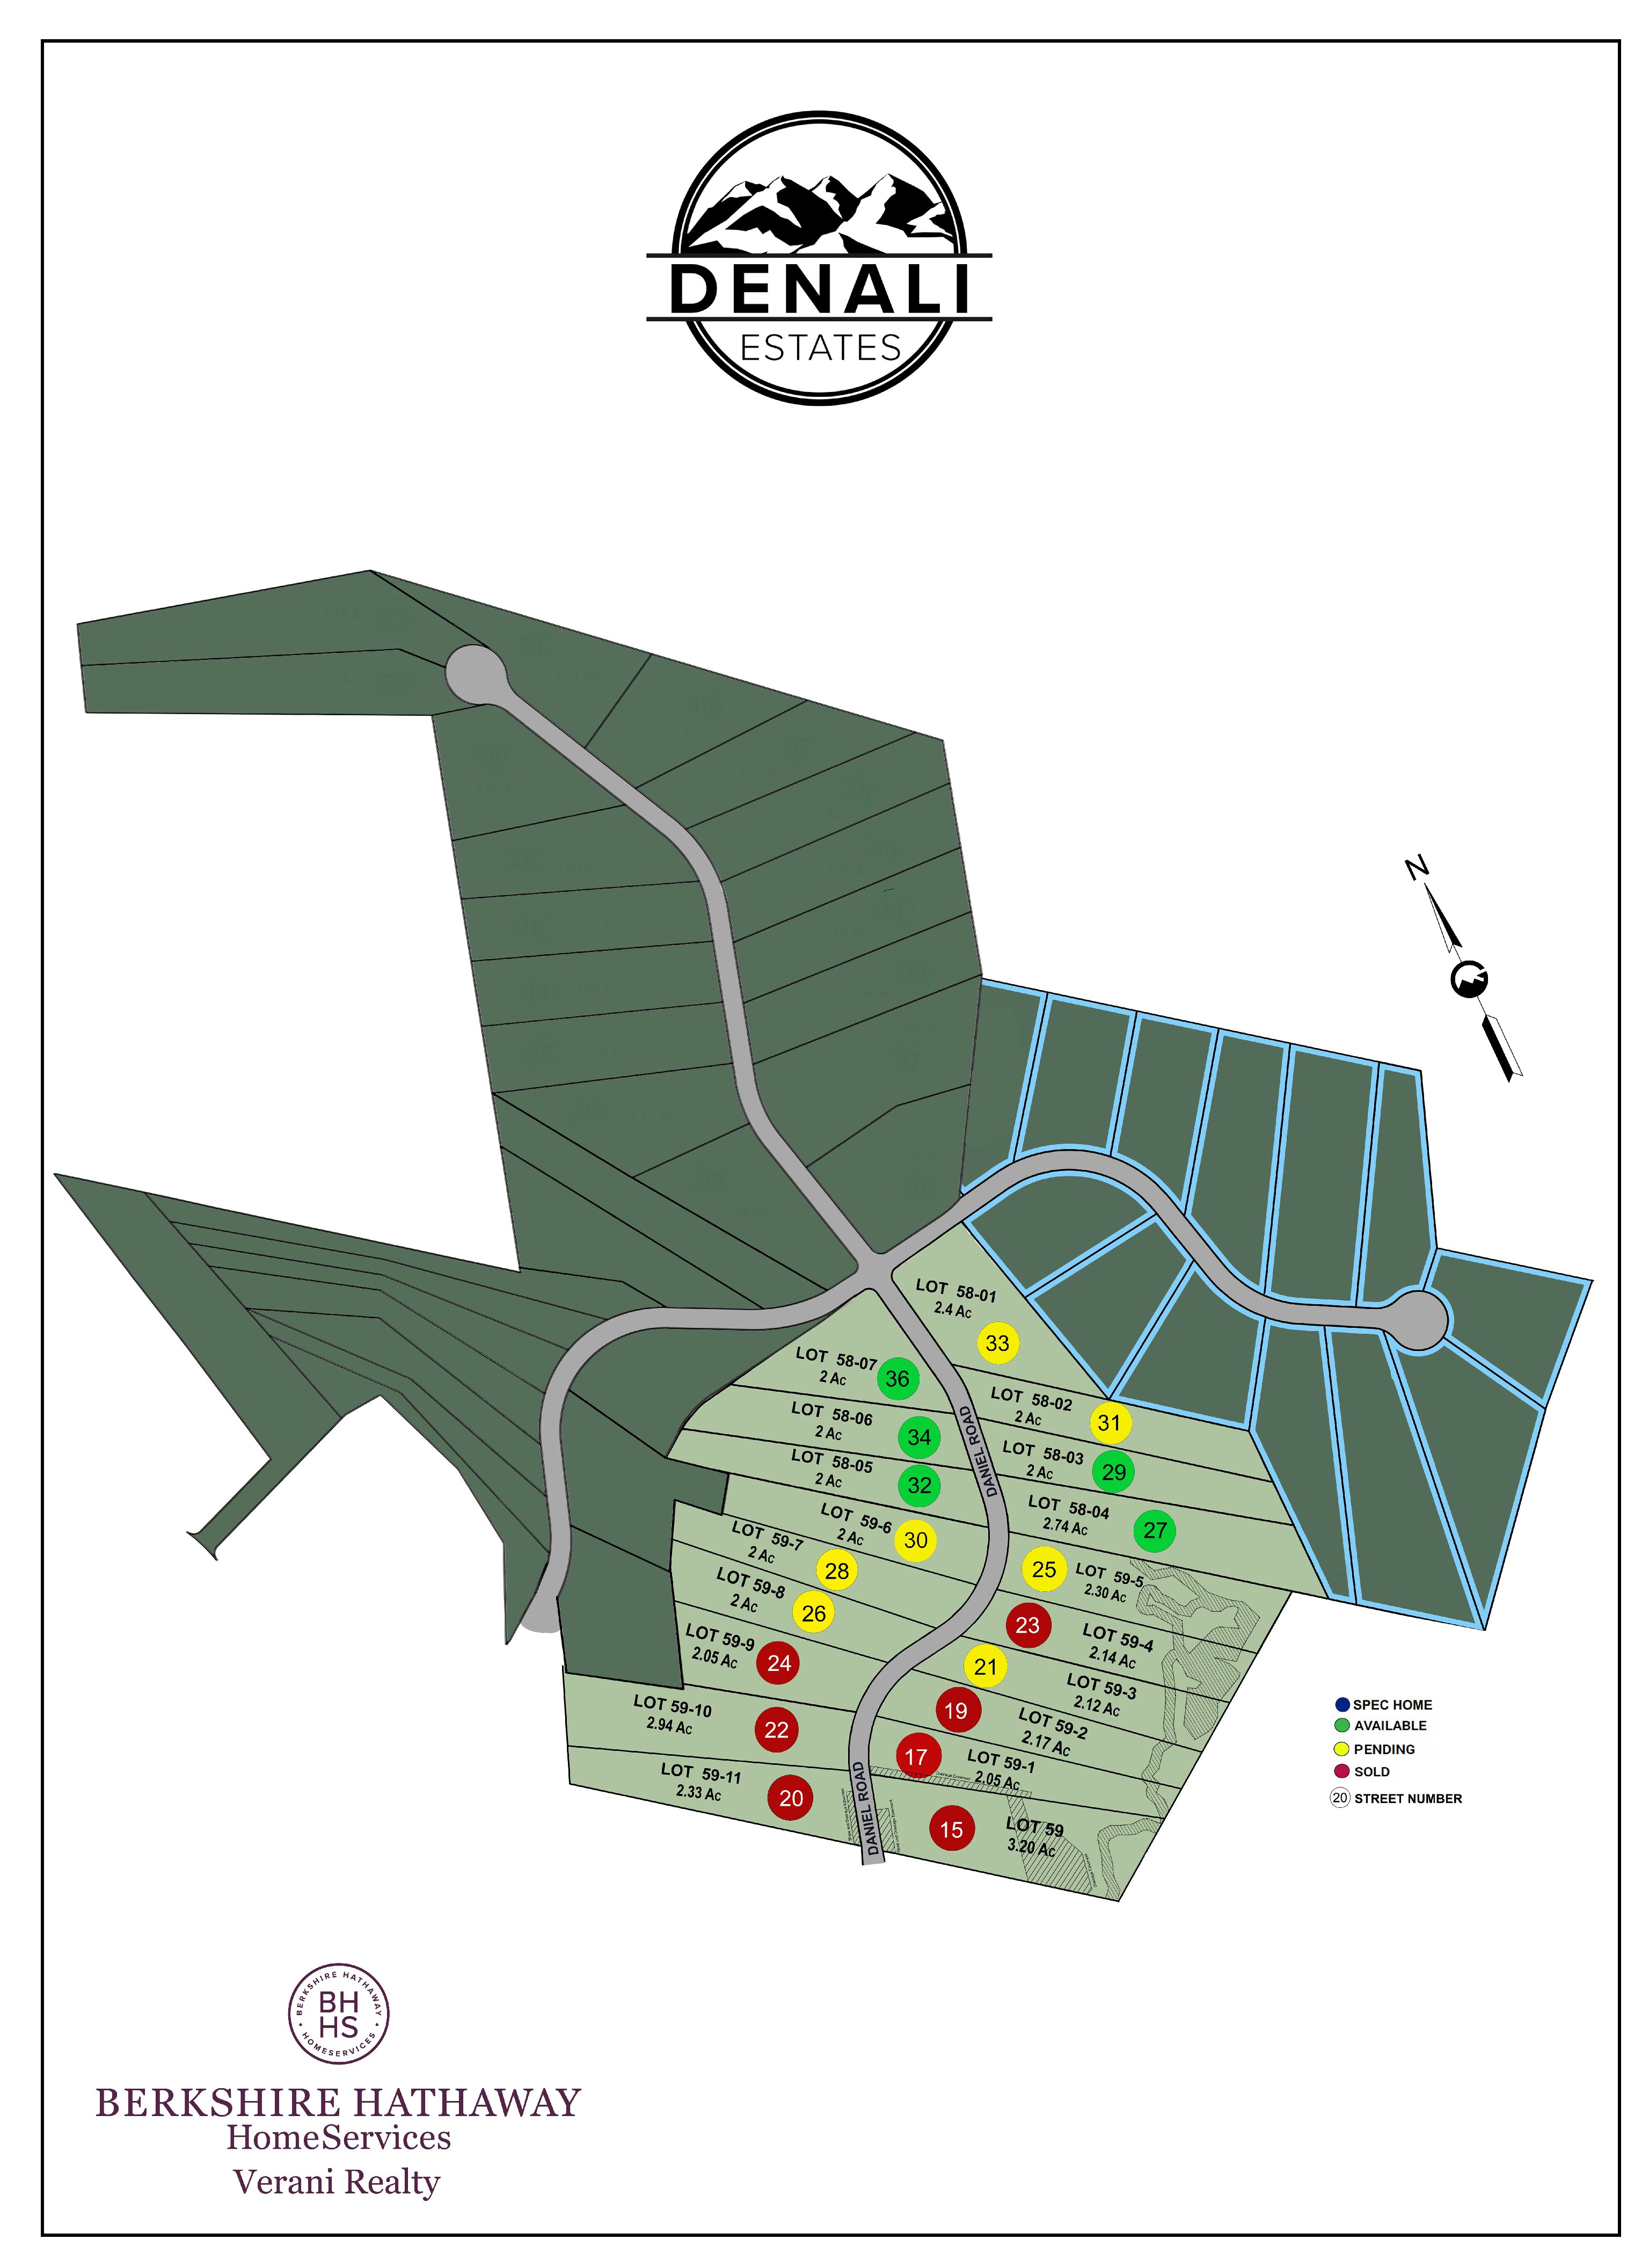 Denali Estates Site Plan